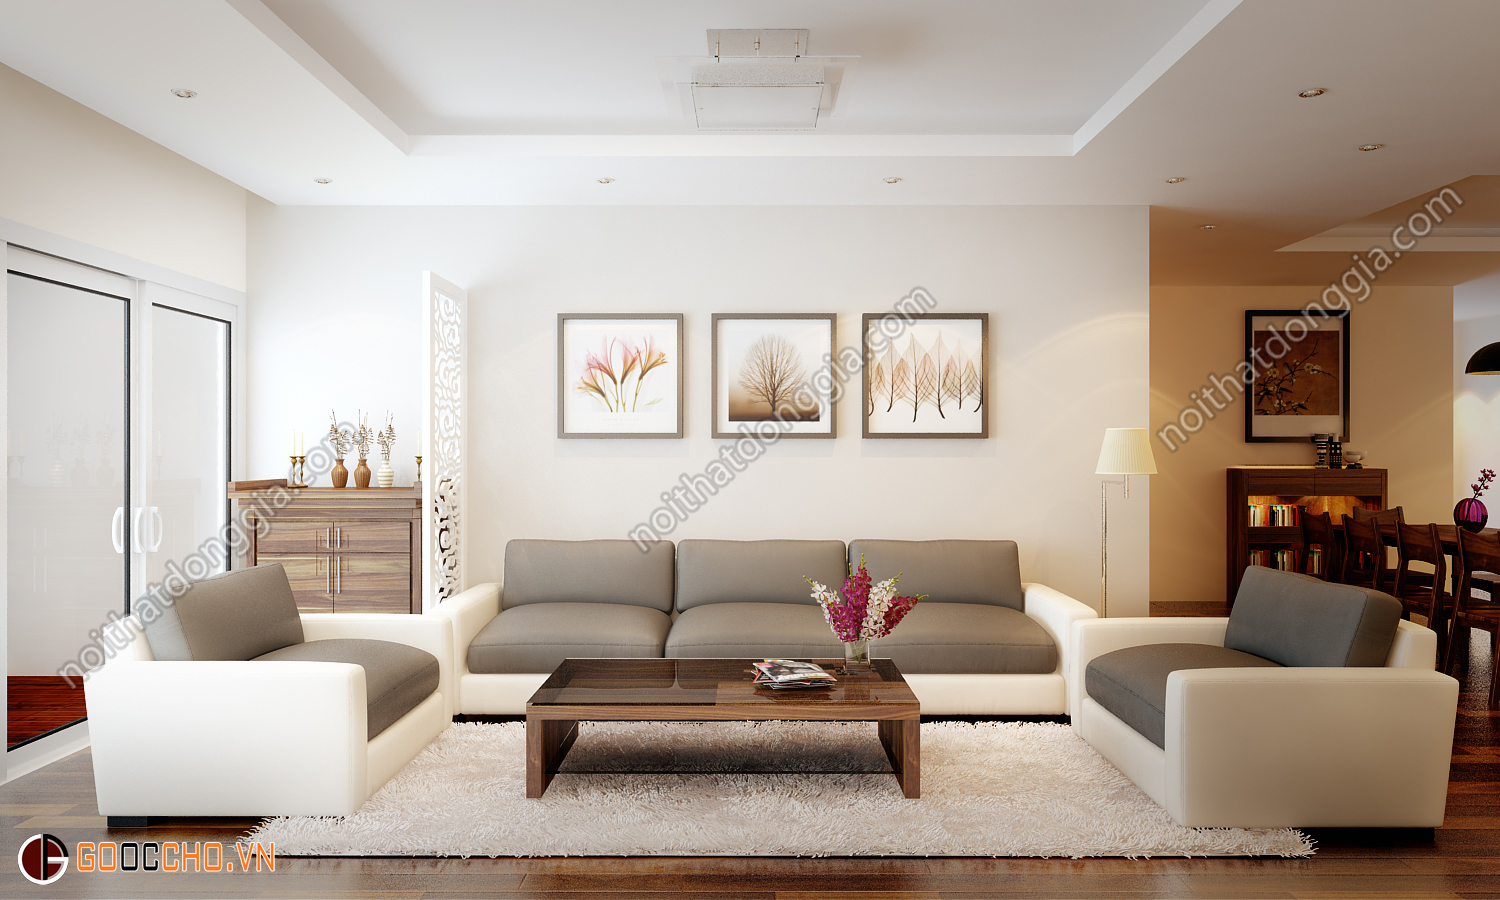 Bạn muốn đổi mới không gian phòng khách của mình? Hãy đến với chúng tôi! Bộ sưu tập trang trí phòng khách độc đáo và tinh tế sẽ giúp cho không gian phòng khách của bạn trở nên sang trọng và mới mẻ hơn. Hãy để chúng tôi thay đổi không gian sống của bạn một cách chuyên nghiệp và tốt nhất.